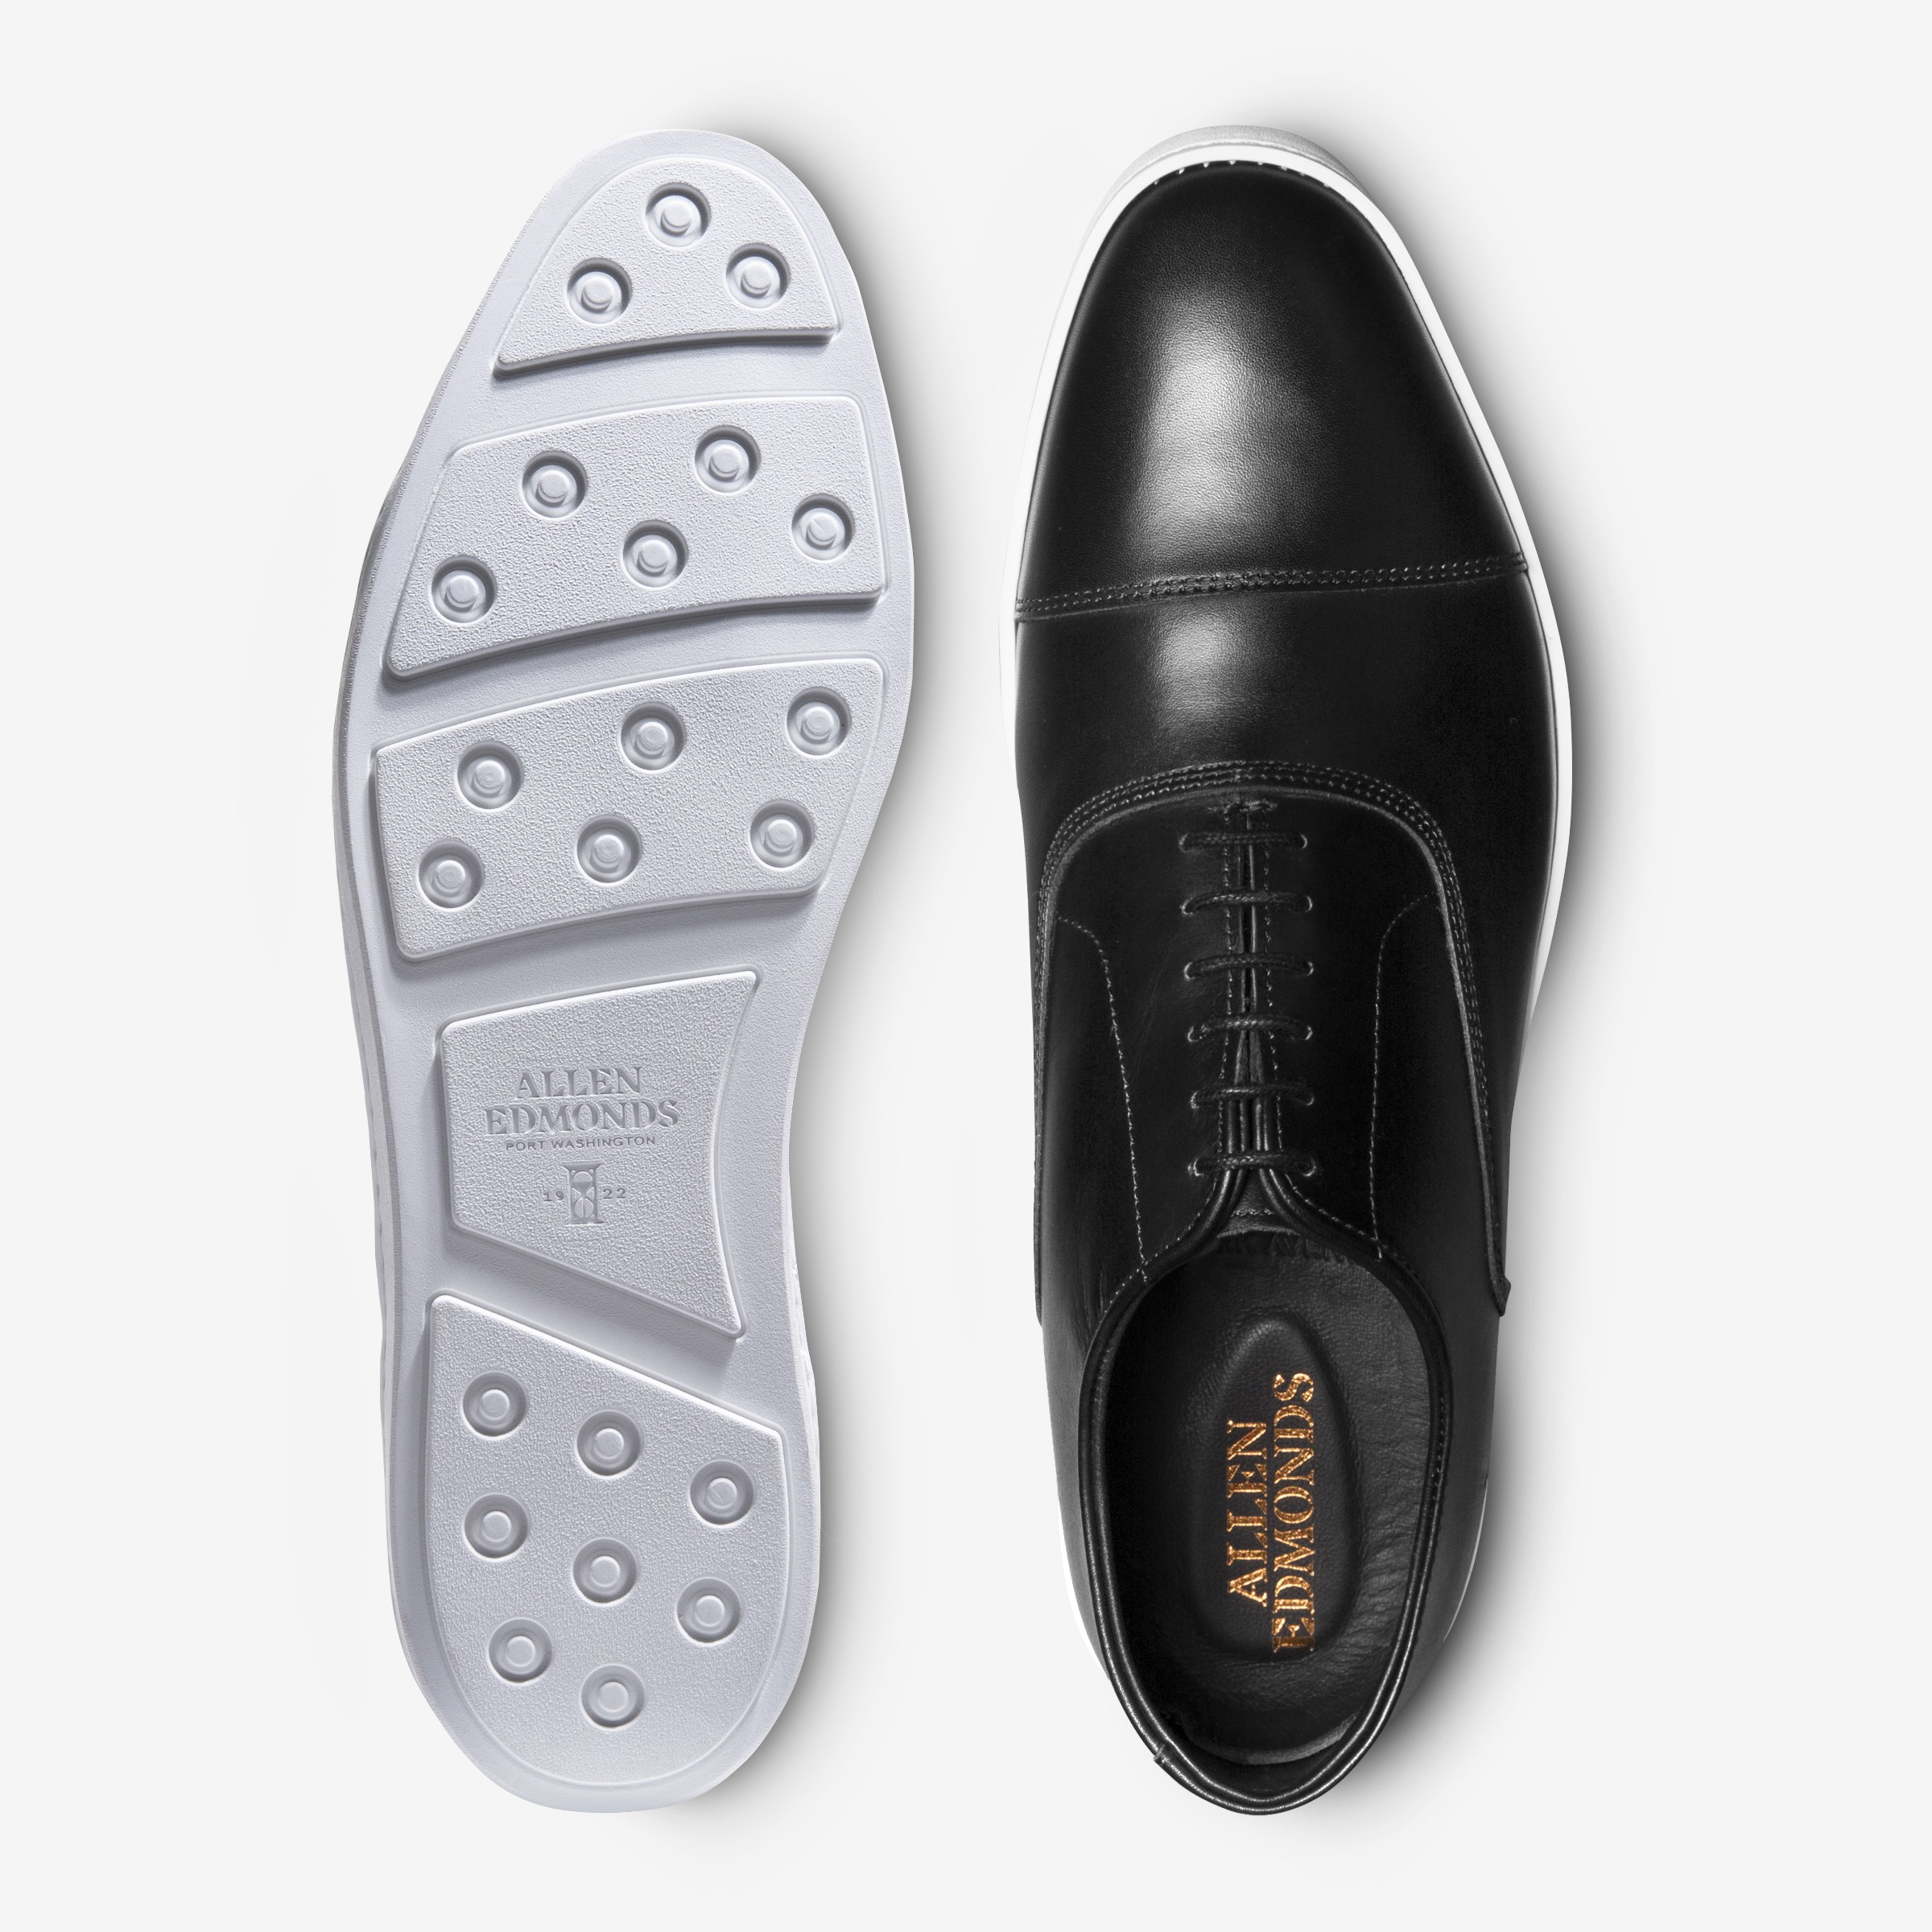 What men's shoes are better than Allen Edmonds? - Quora